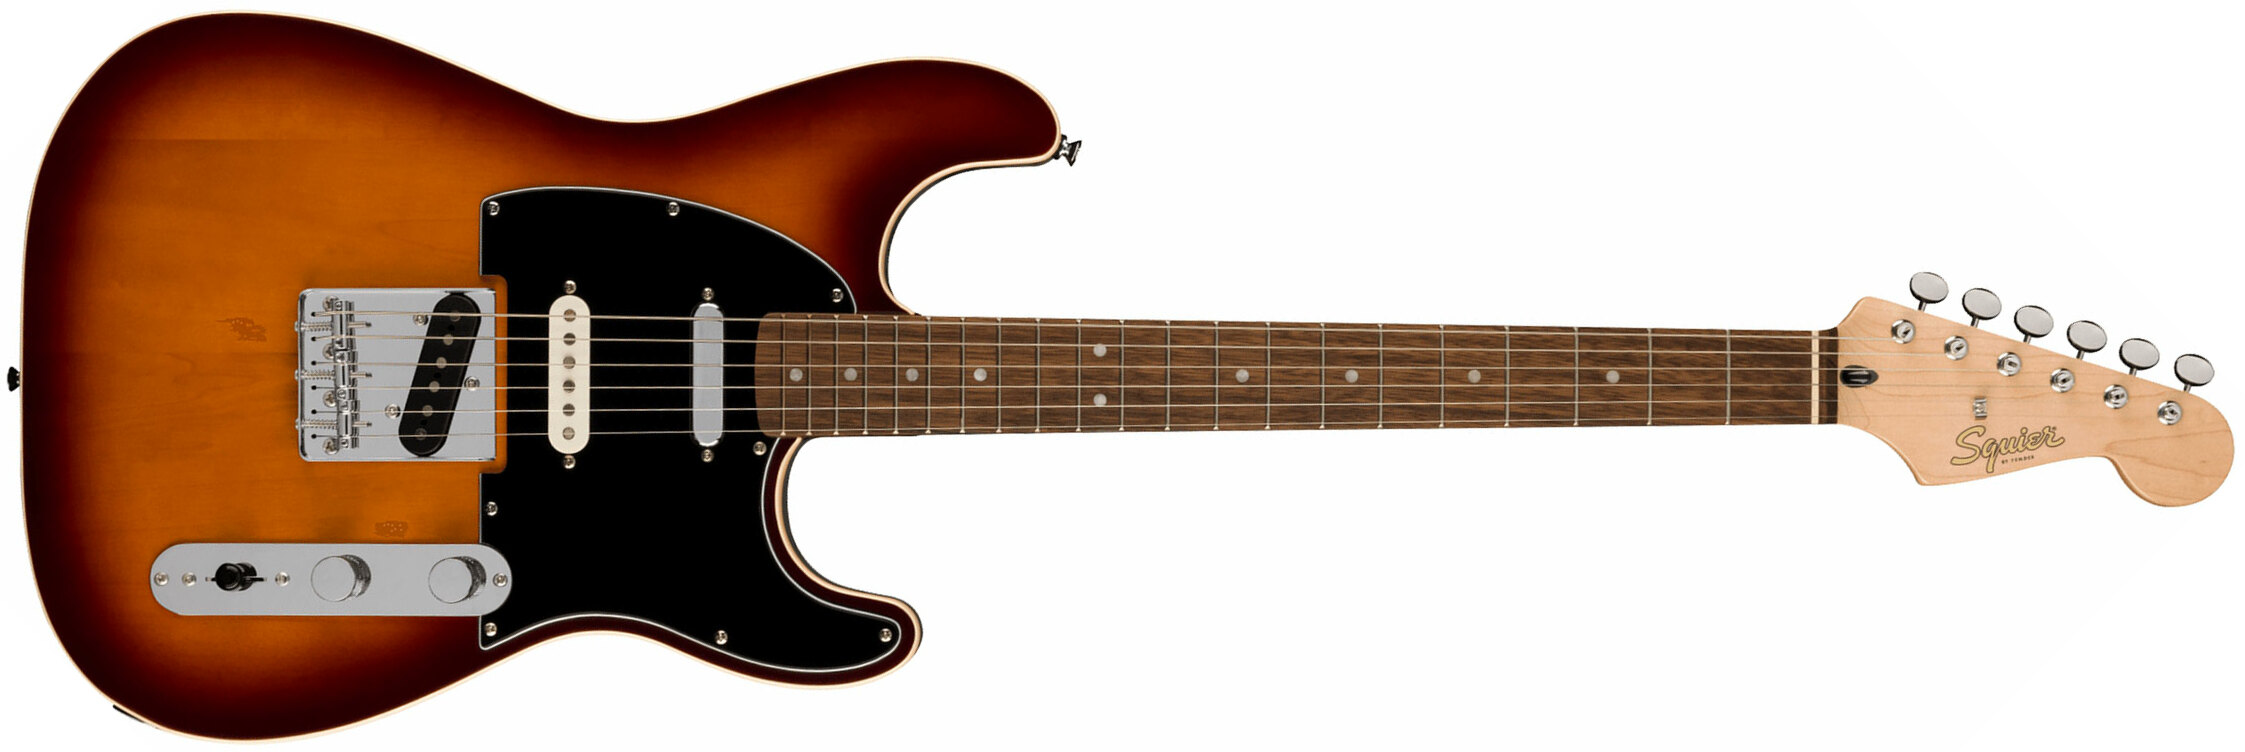 Squier Strat Custom Nashville Paranormal Series 3s Ht Lau - 2-color Sunburst - Str shape electric guitar - Main picture